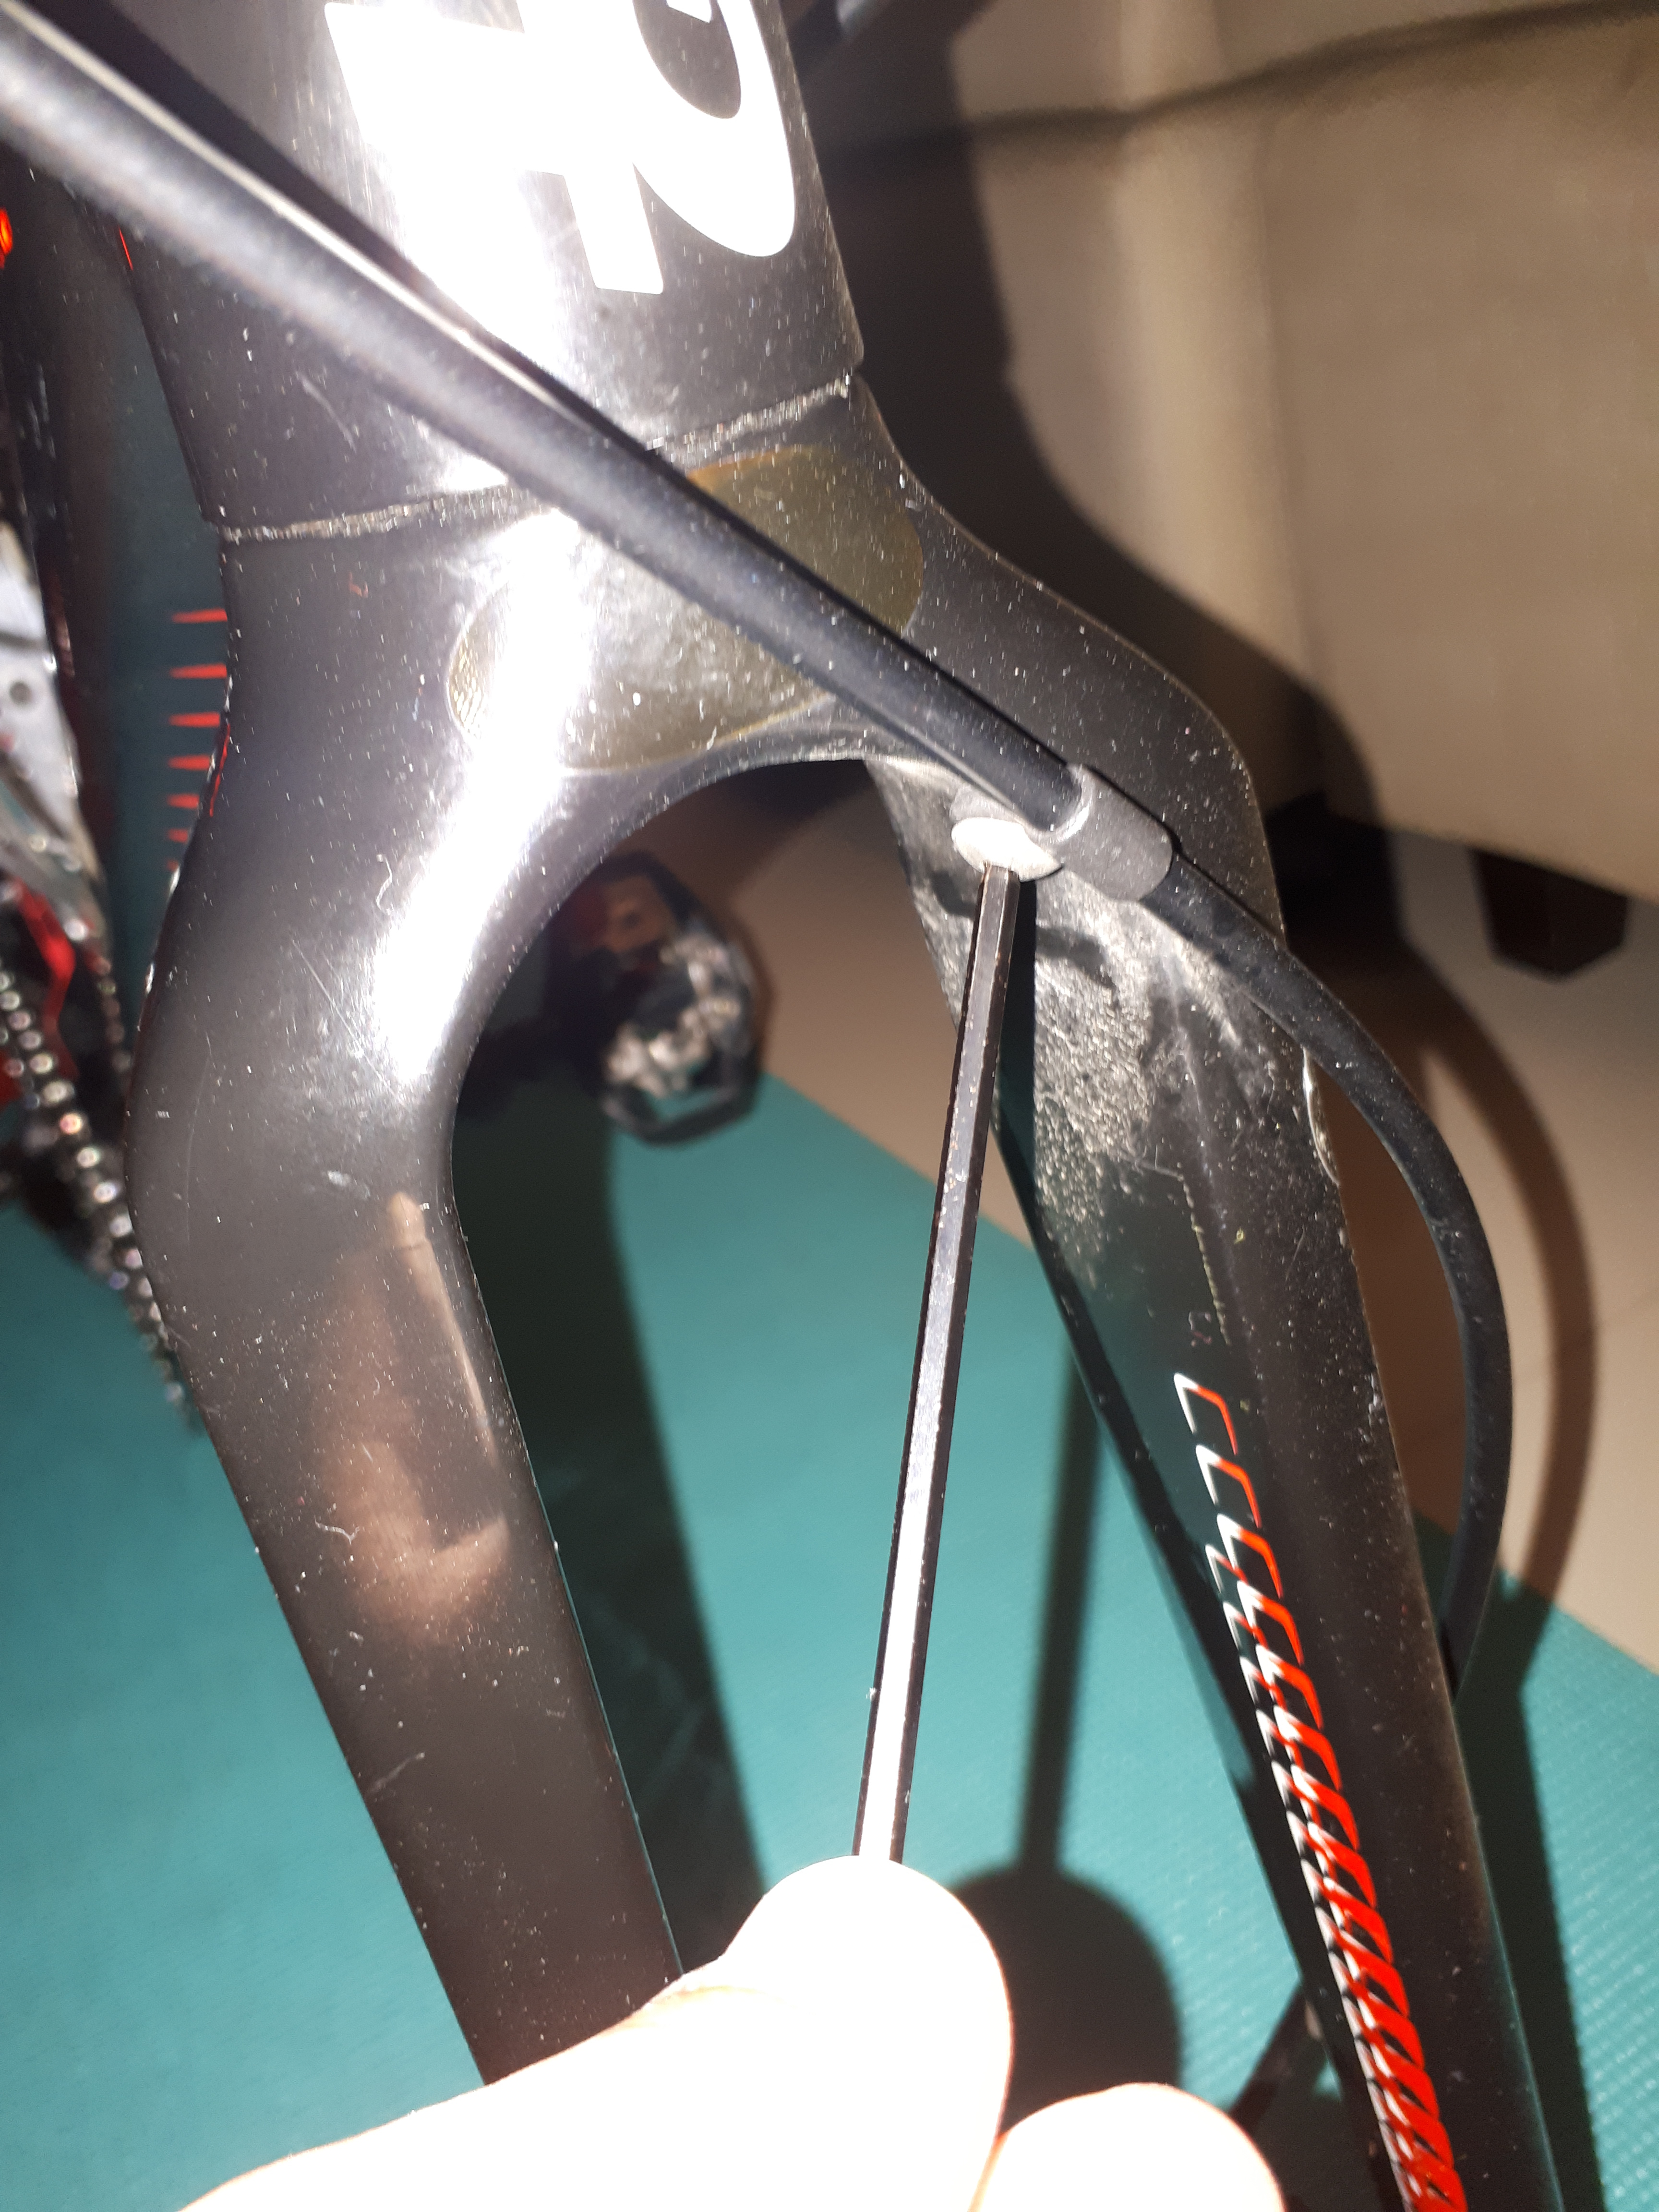 replacing brake cables bike